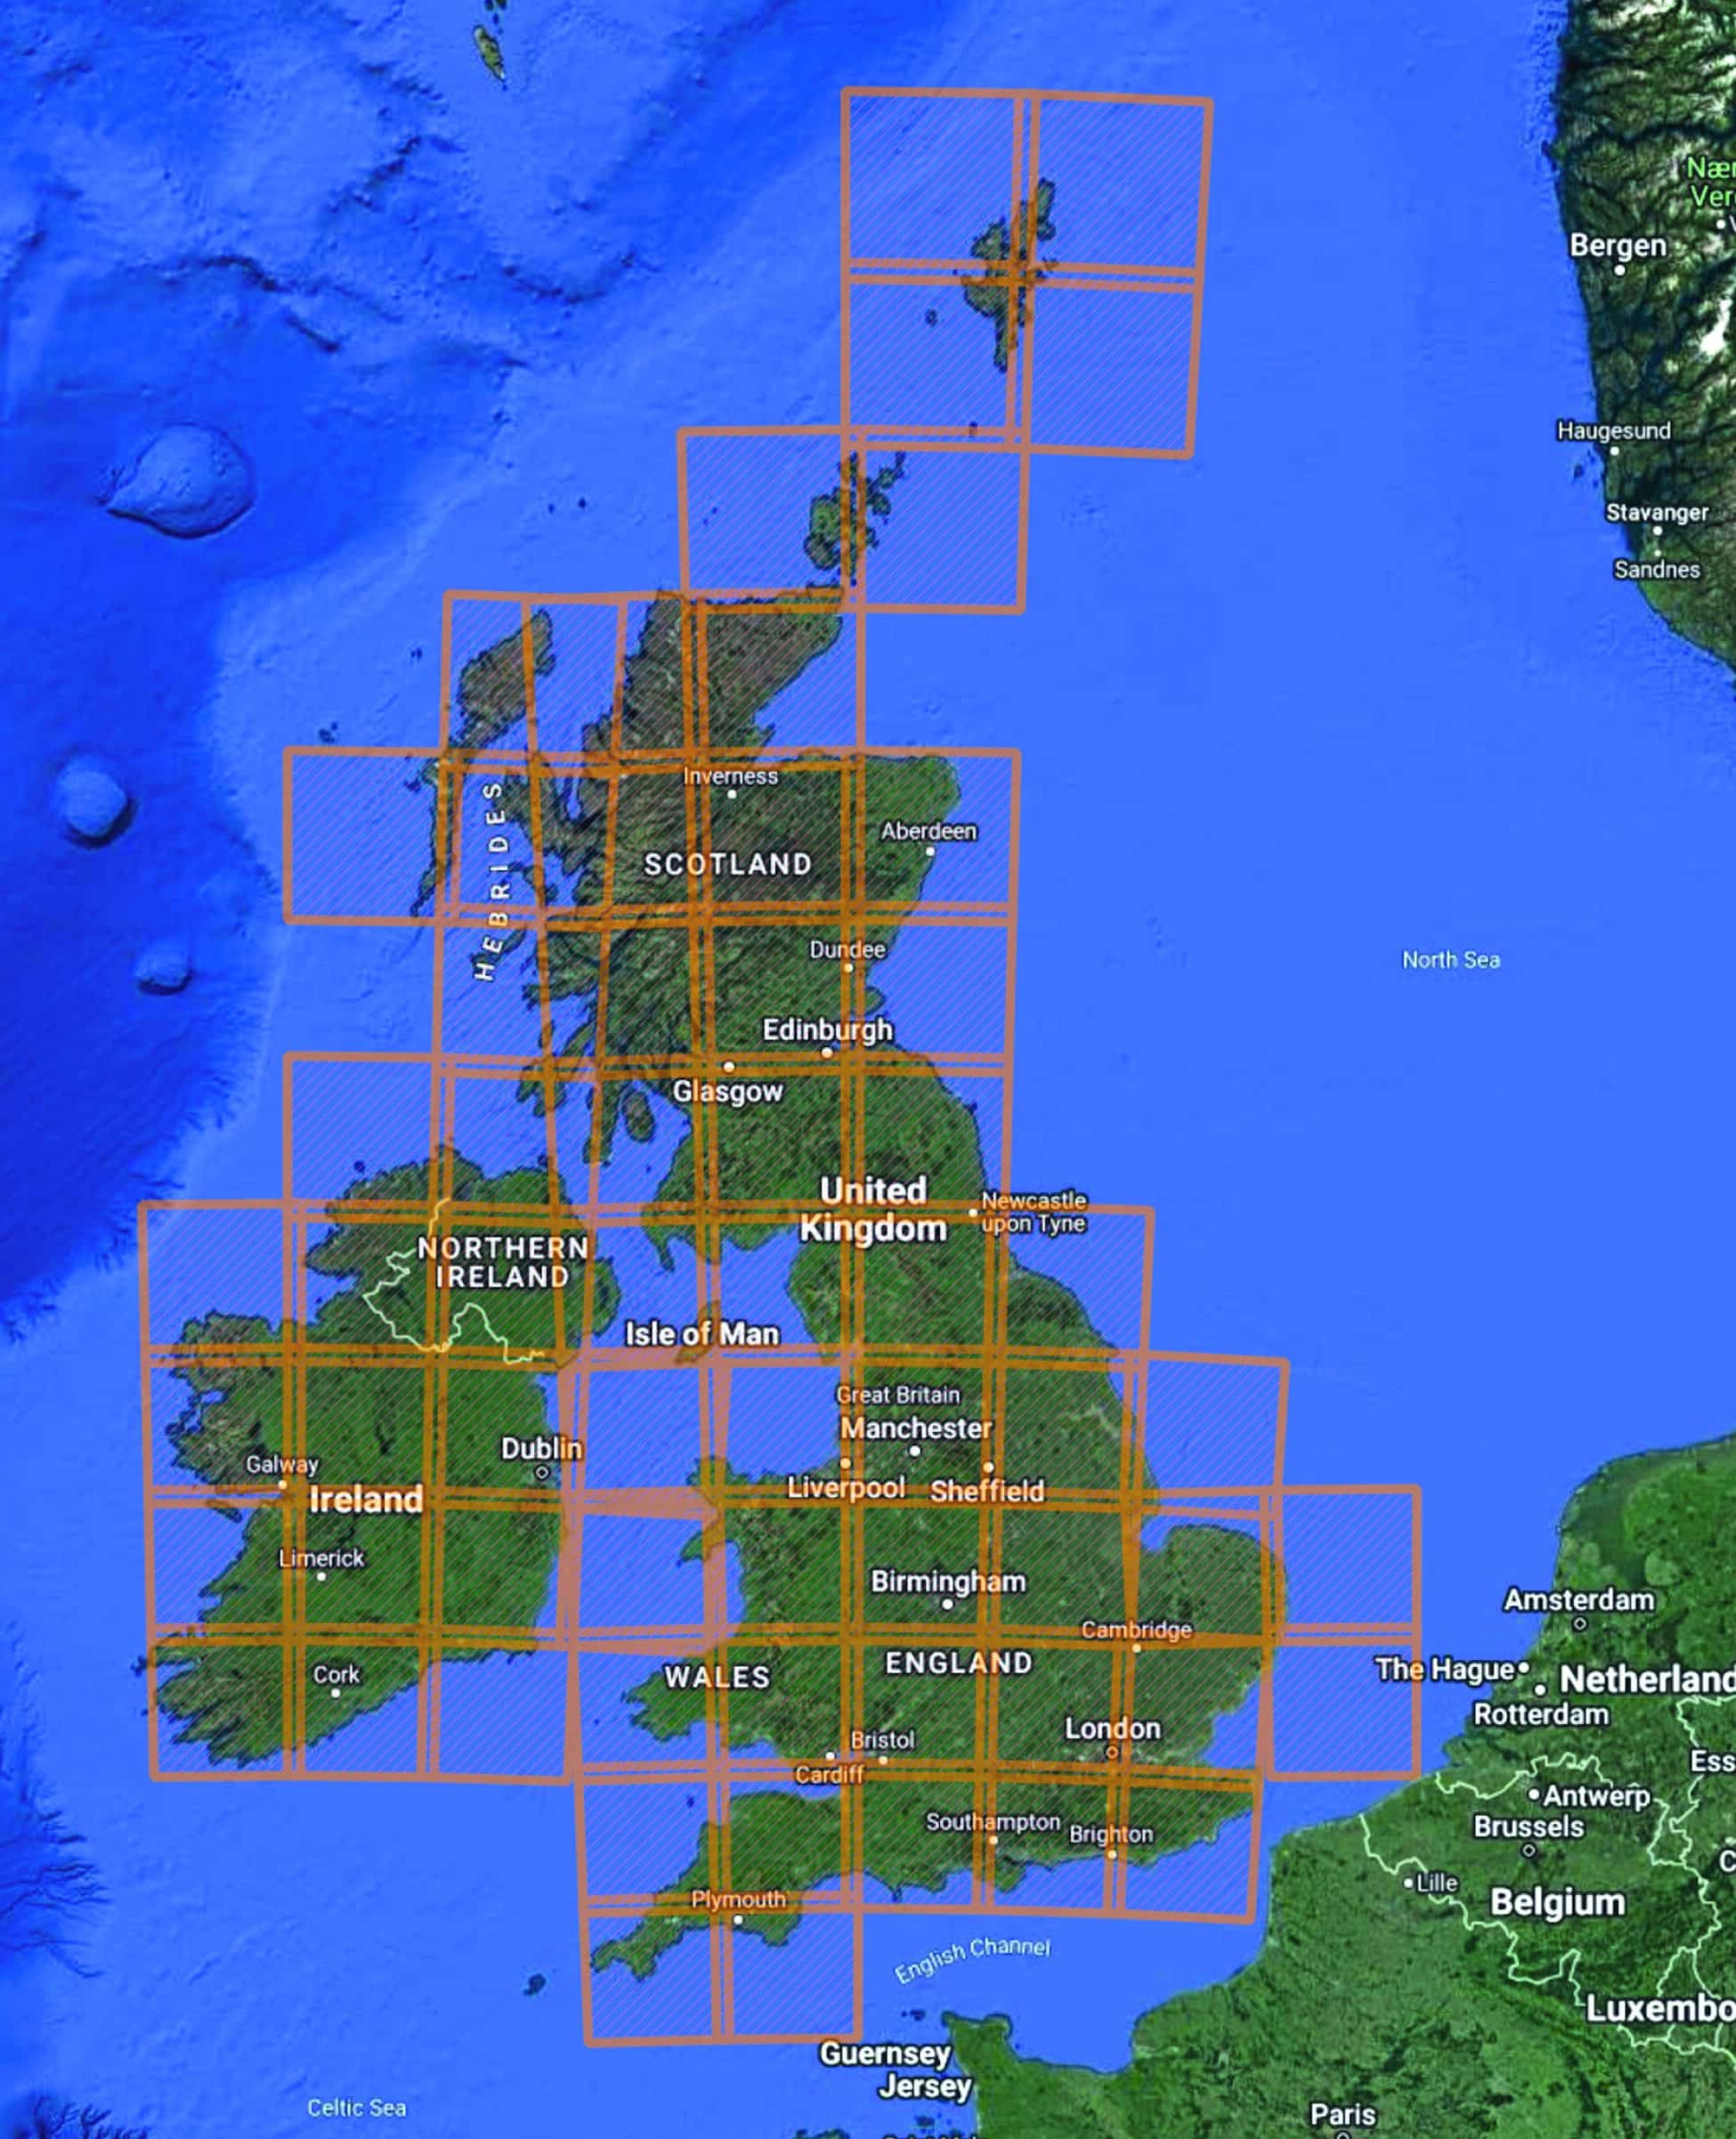 Satellite image of United Kingdom and Ireland